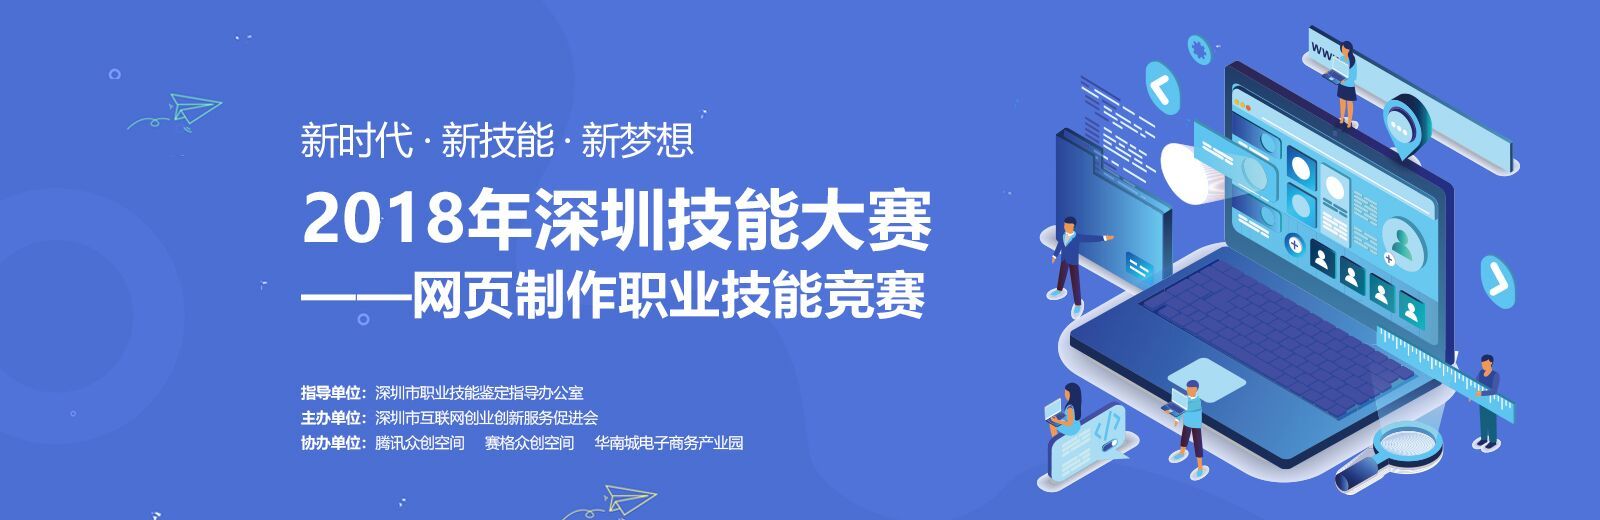 2018年深圳技能大赛-网页制作职业技能竞赛正火热报名中